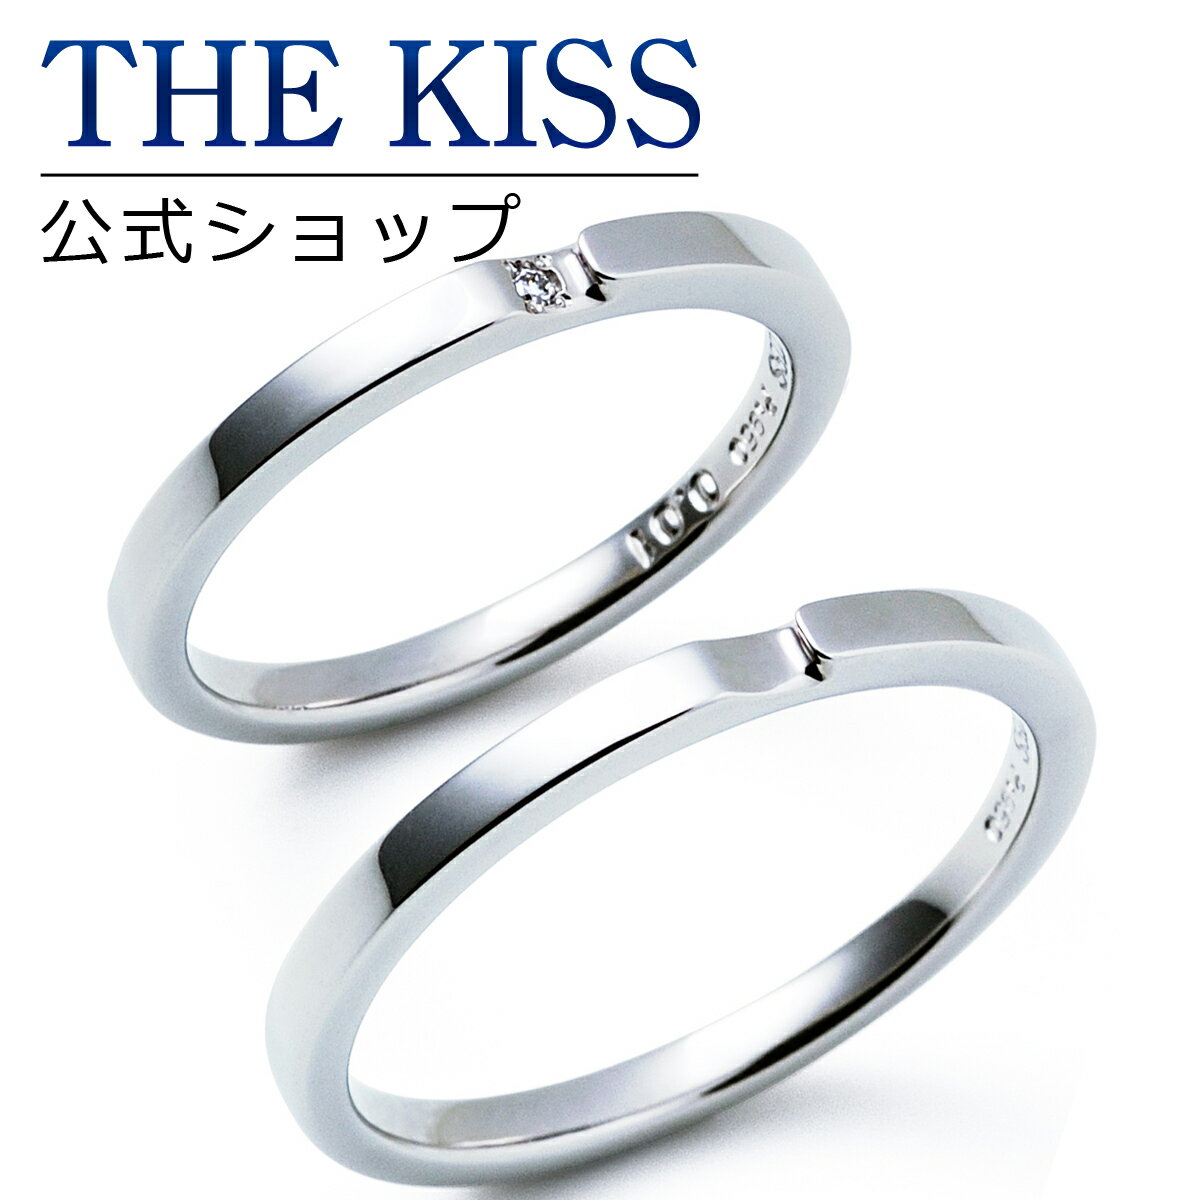 【ラッピング無料】【刻印無料】【THE KISS Anniversary】 プラチナ マリッジ リング 結婚指輪 ペアリング THE KISS ザキッス リング・指輪 7061122091-7061122092 セット シンプル 男性 女性 2個セット 母の日